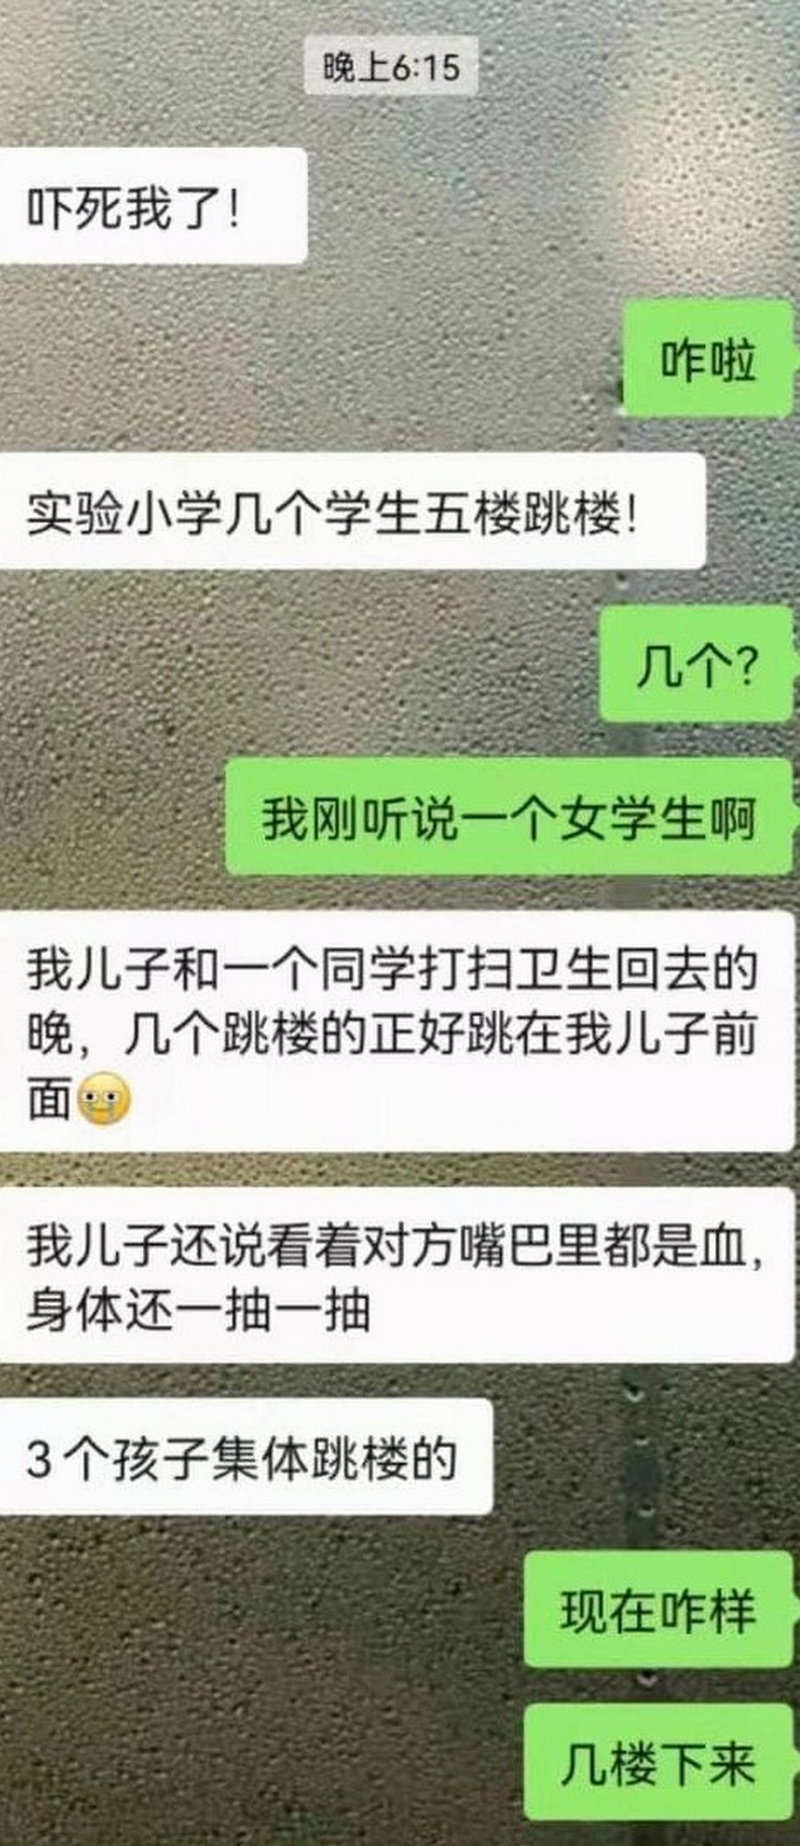 2021年11月15日，江苏省启东实验小学3名六年级学生坠楼。微信学校家长群聊天记录（图片来源：微信聊天截图）.png